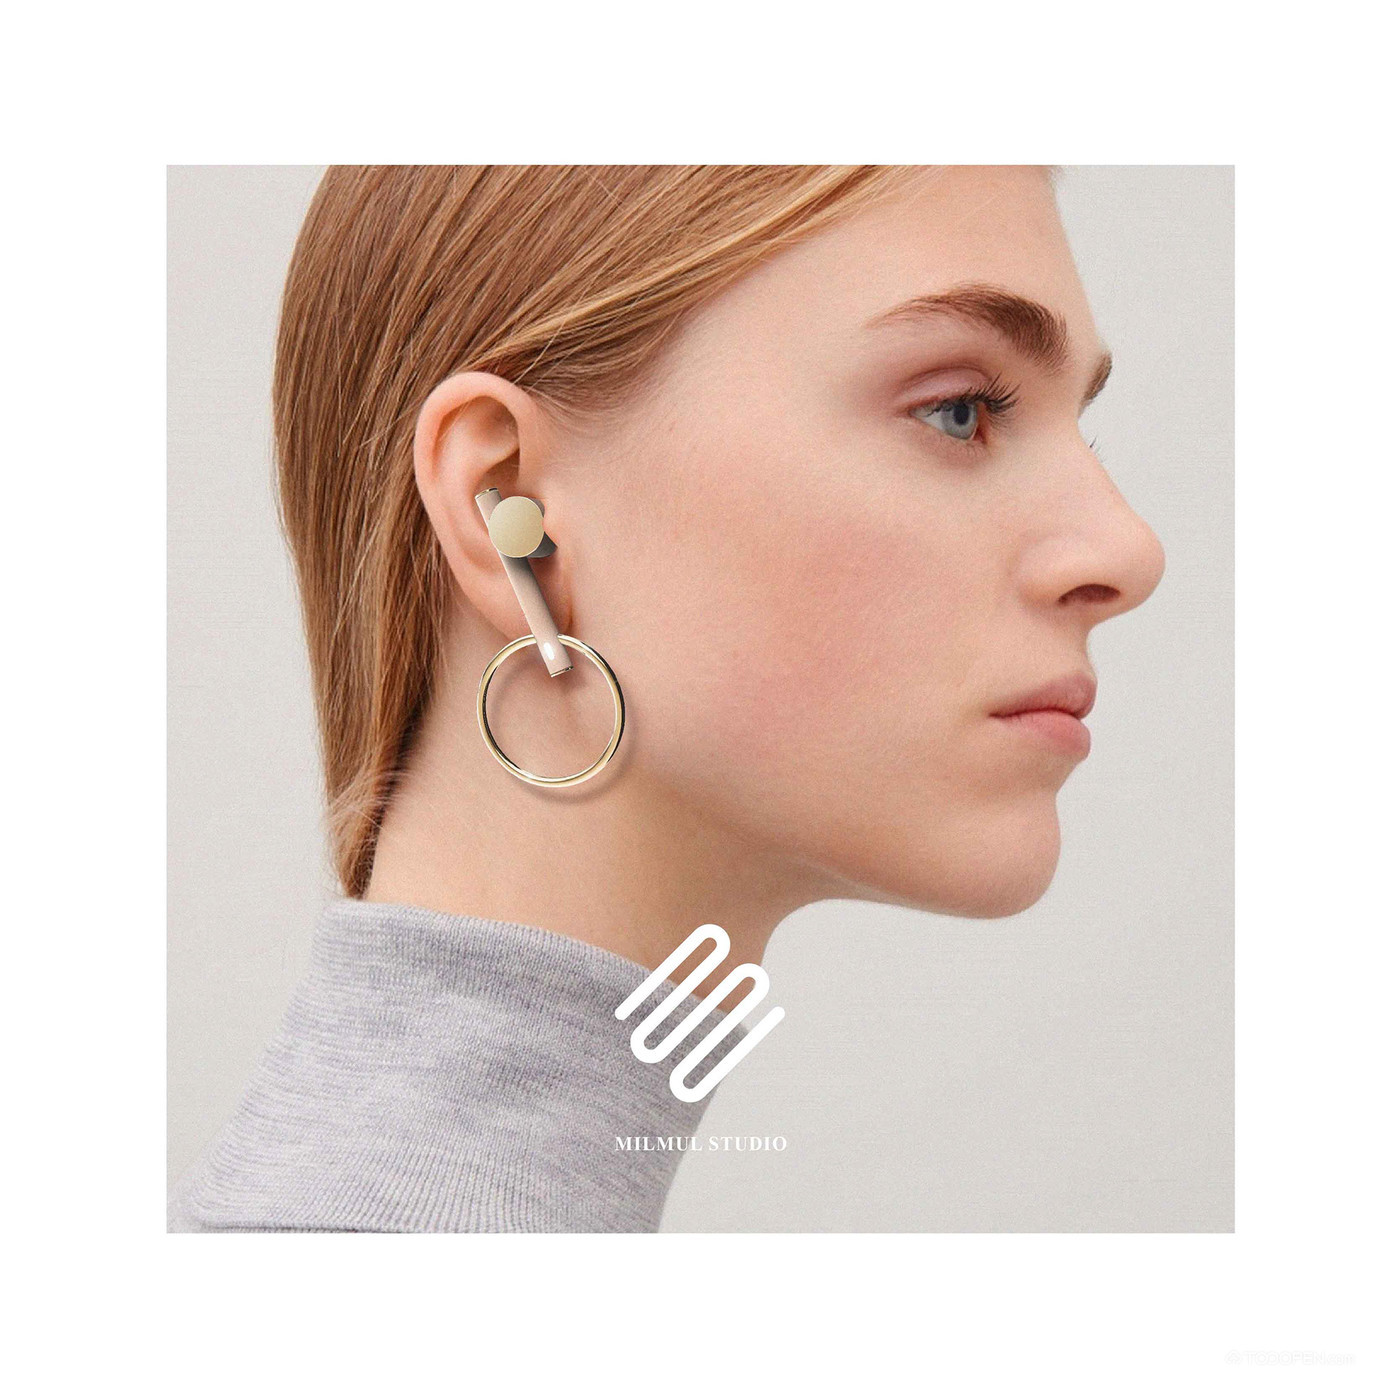 形似耳环的精致耳机产品设计高清图片-07